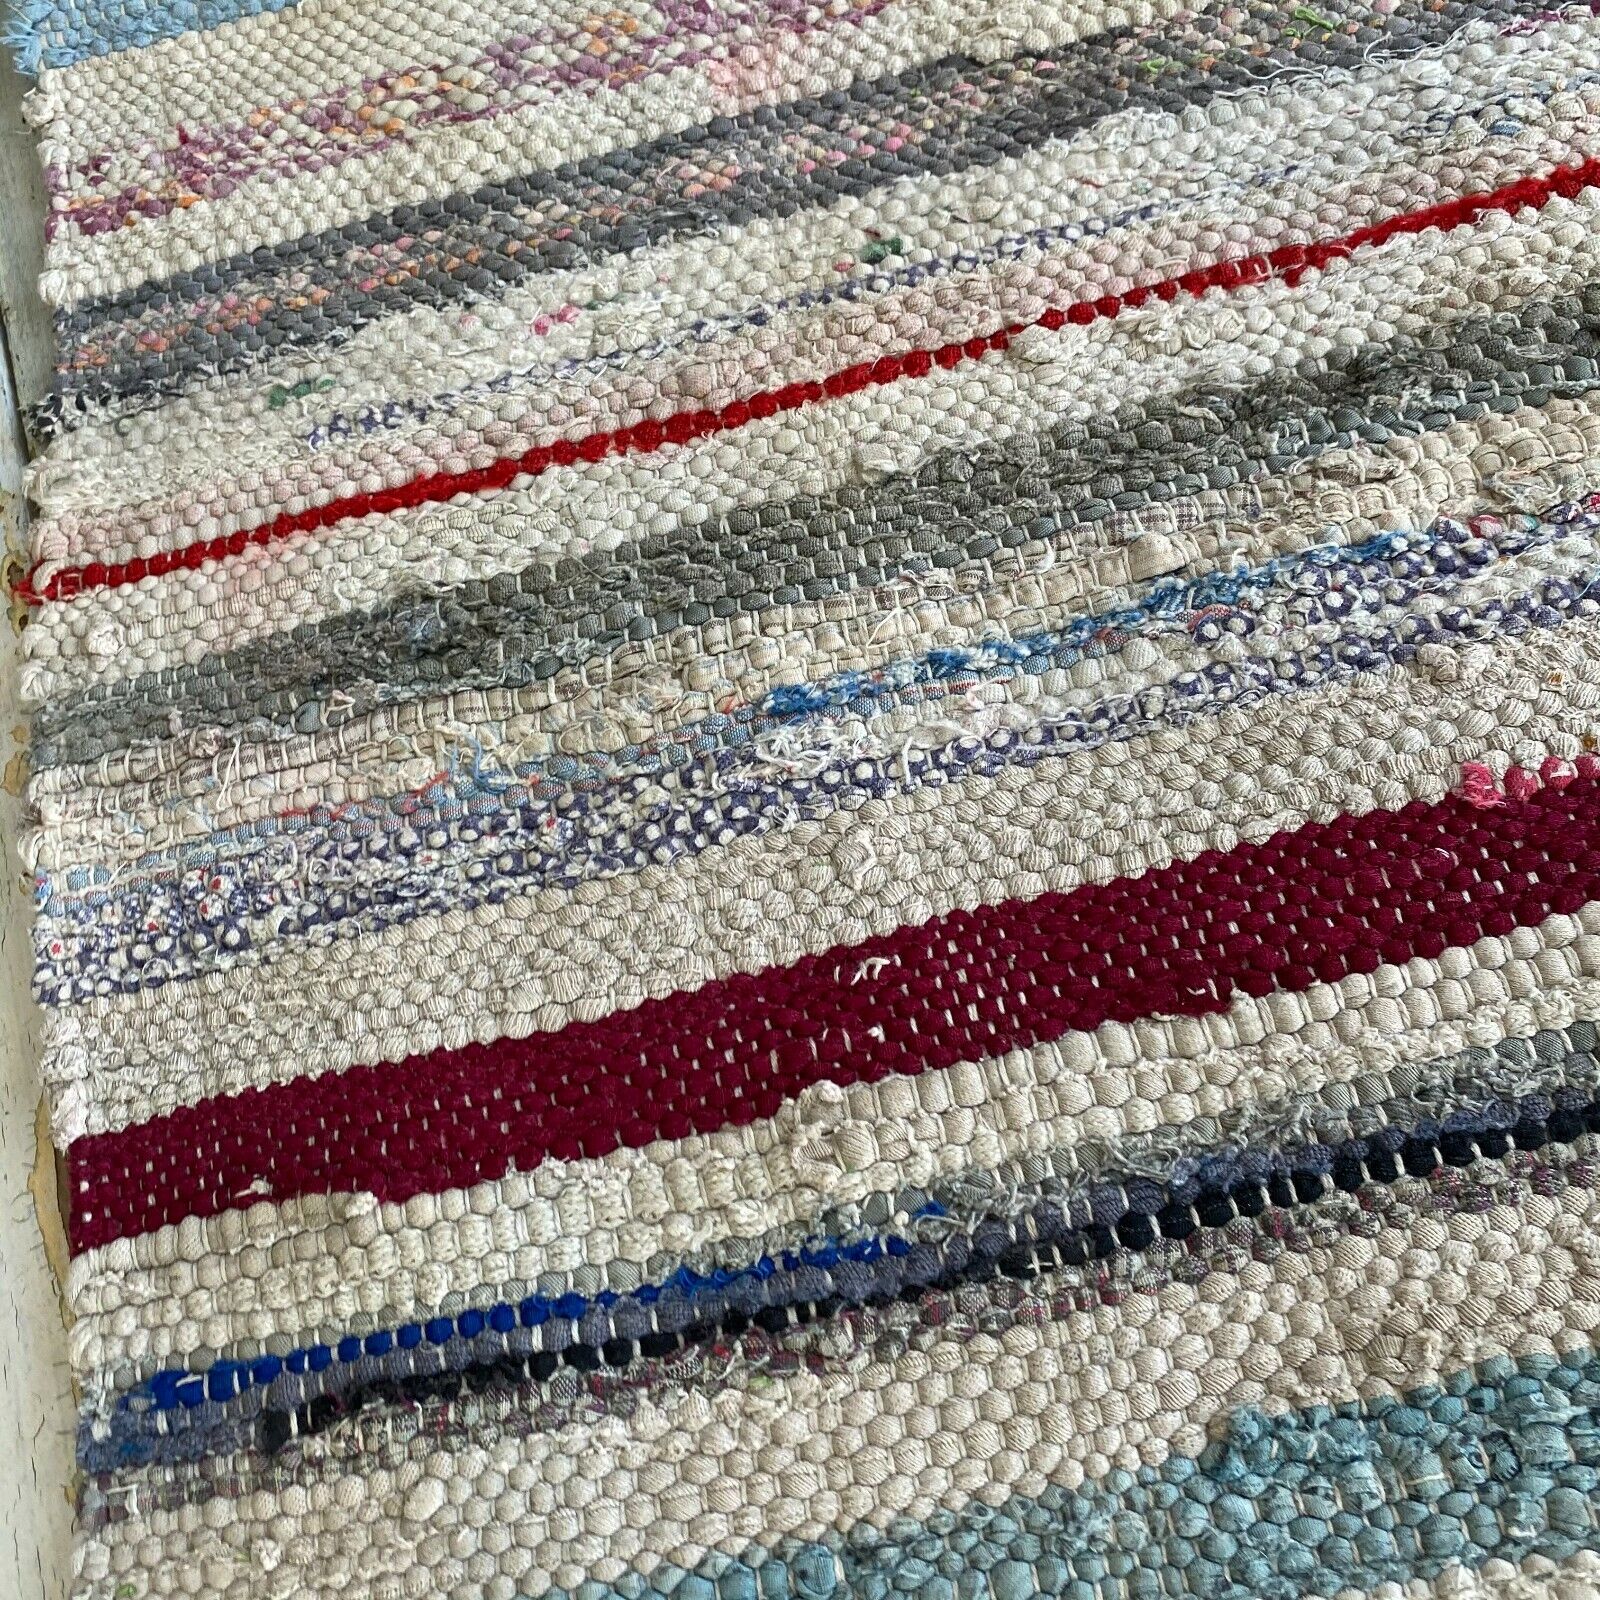  Rag Rug  stair runner Table runner fabric material handwoven European textile 